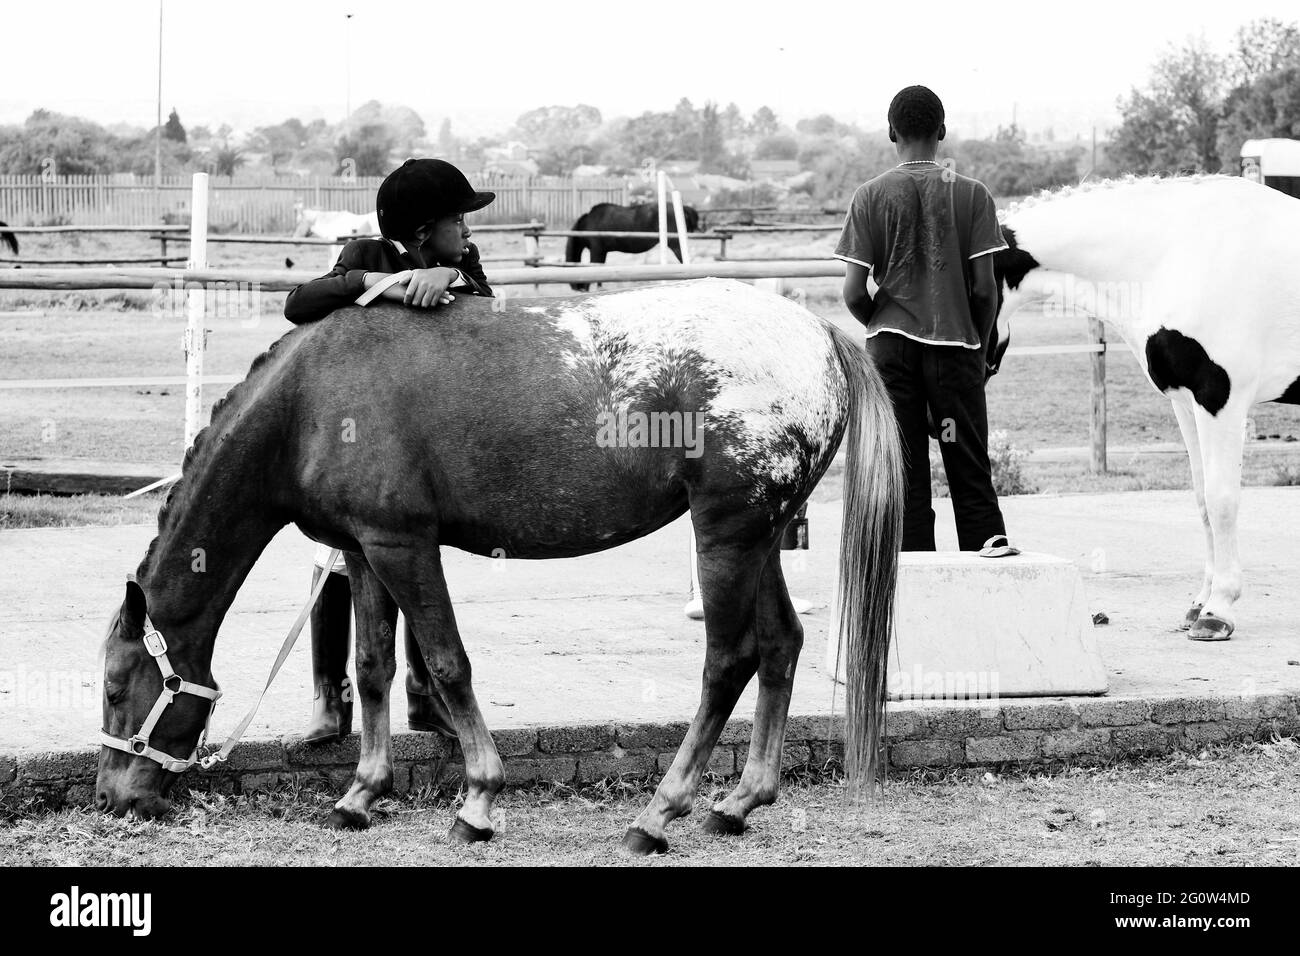 JOHANNESBURG, AFRIQUE DU SUD - 06 janvier 2021: Soweto, Afrique du Sud - 16 avril 2012: Jeune enfant africain se reposant sur un cheval Banque D'Images